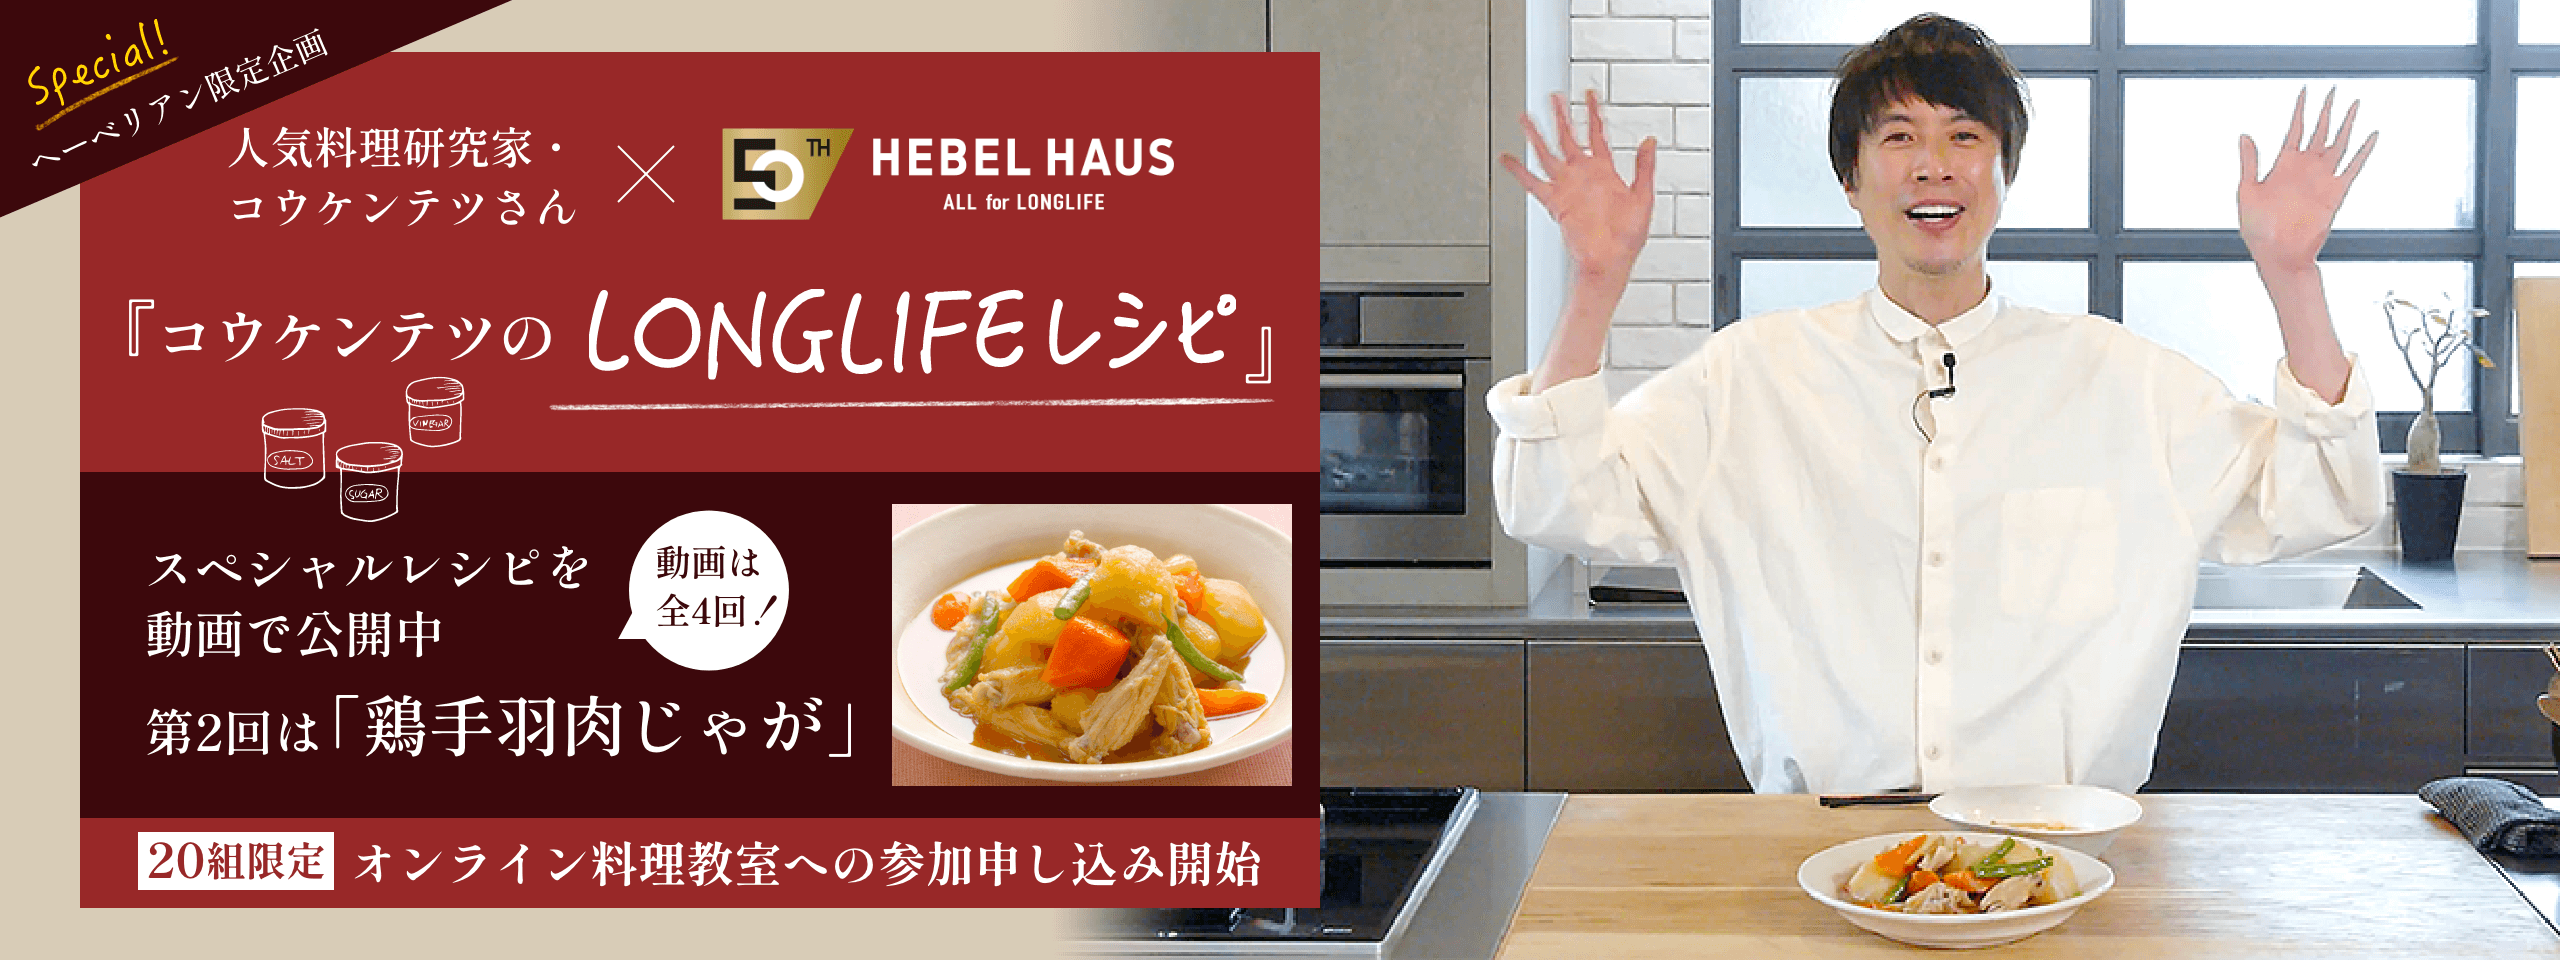 人気料理研究家・コウケンテツさん×HEBEL HAUS 『コウケンテツのLONGLIFE』レシピ スペシャルレシピを動画で公開中